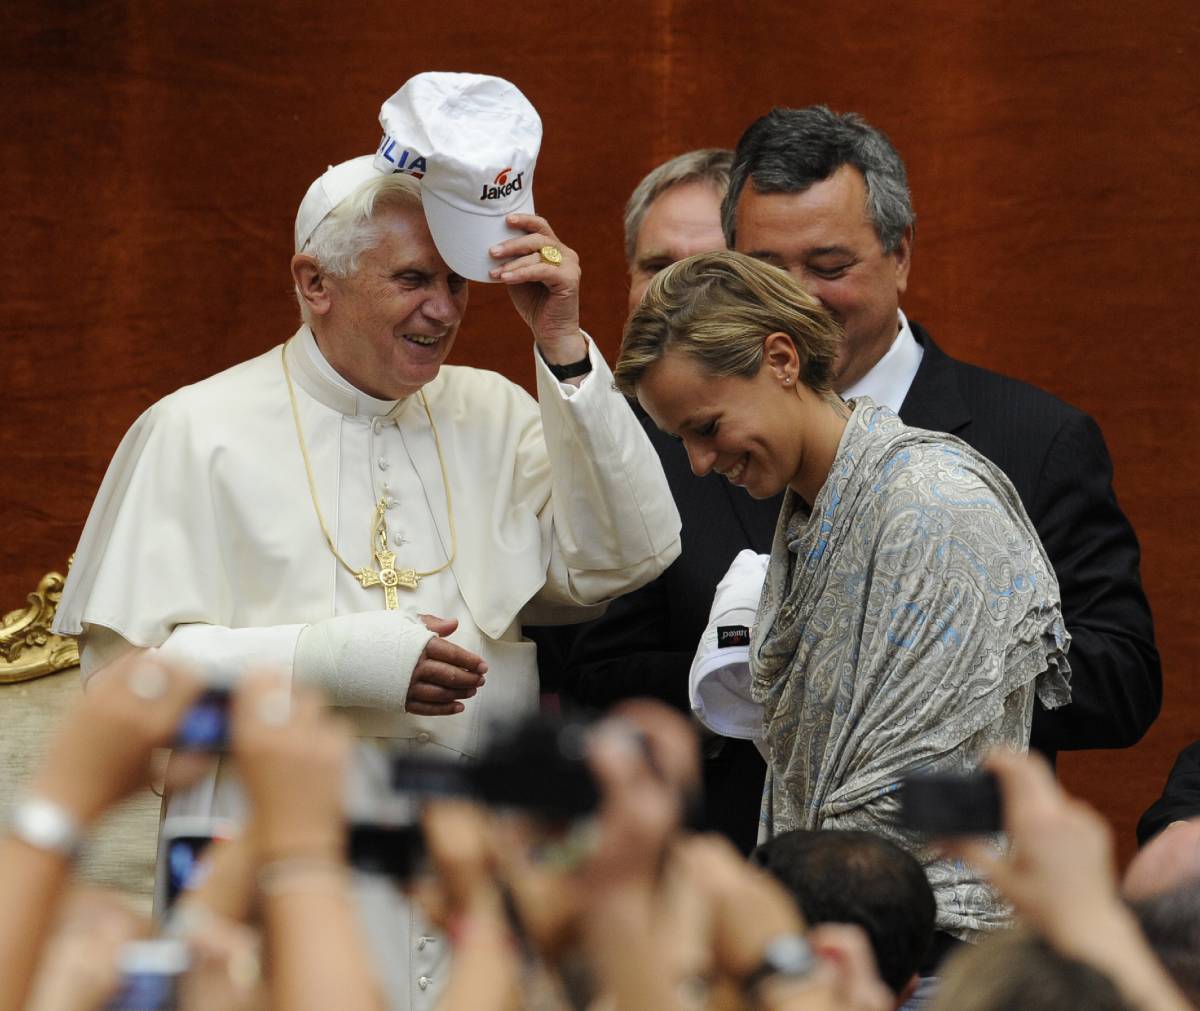 Il Papa ai campioni di nuoto:  
"Siete modello per i coetanei"